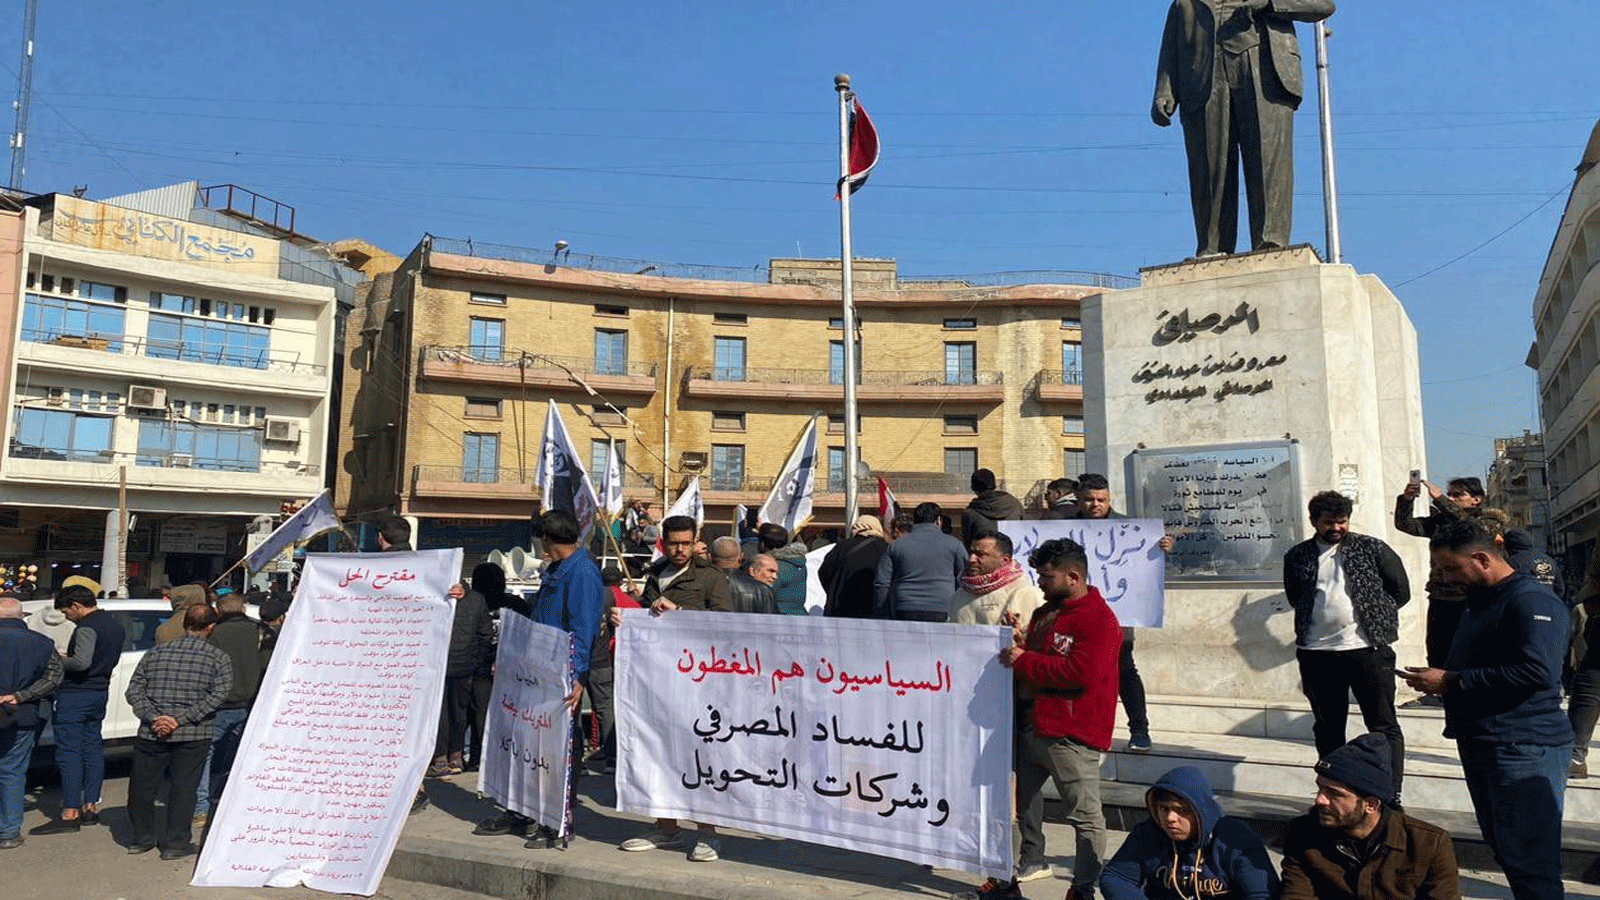 صورة متداولة عبر تويتر من التظاهرة العراقية أمام البنك المركزي